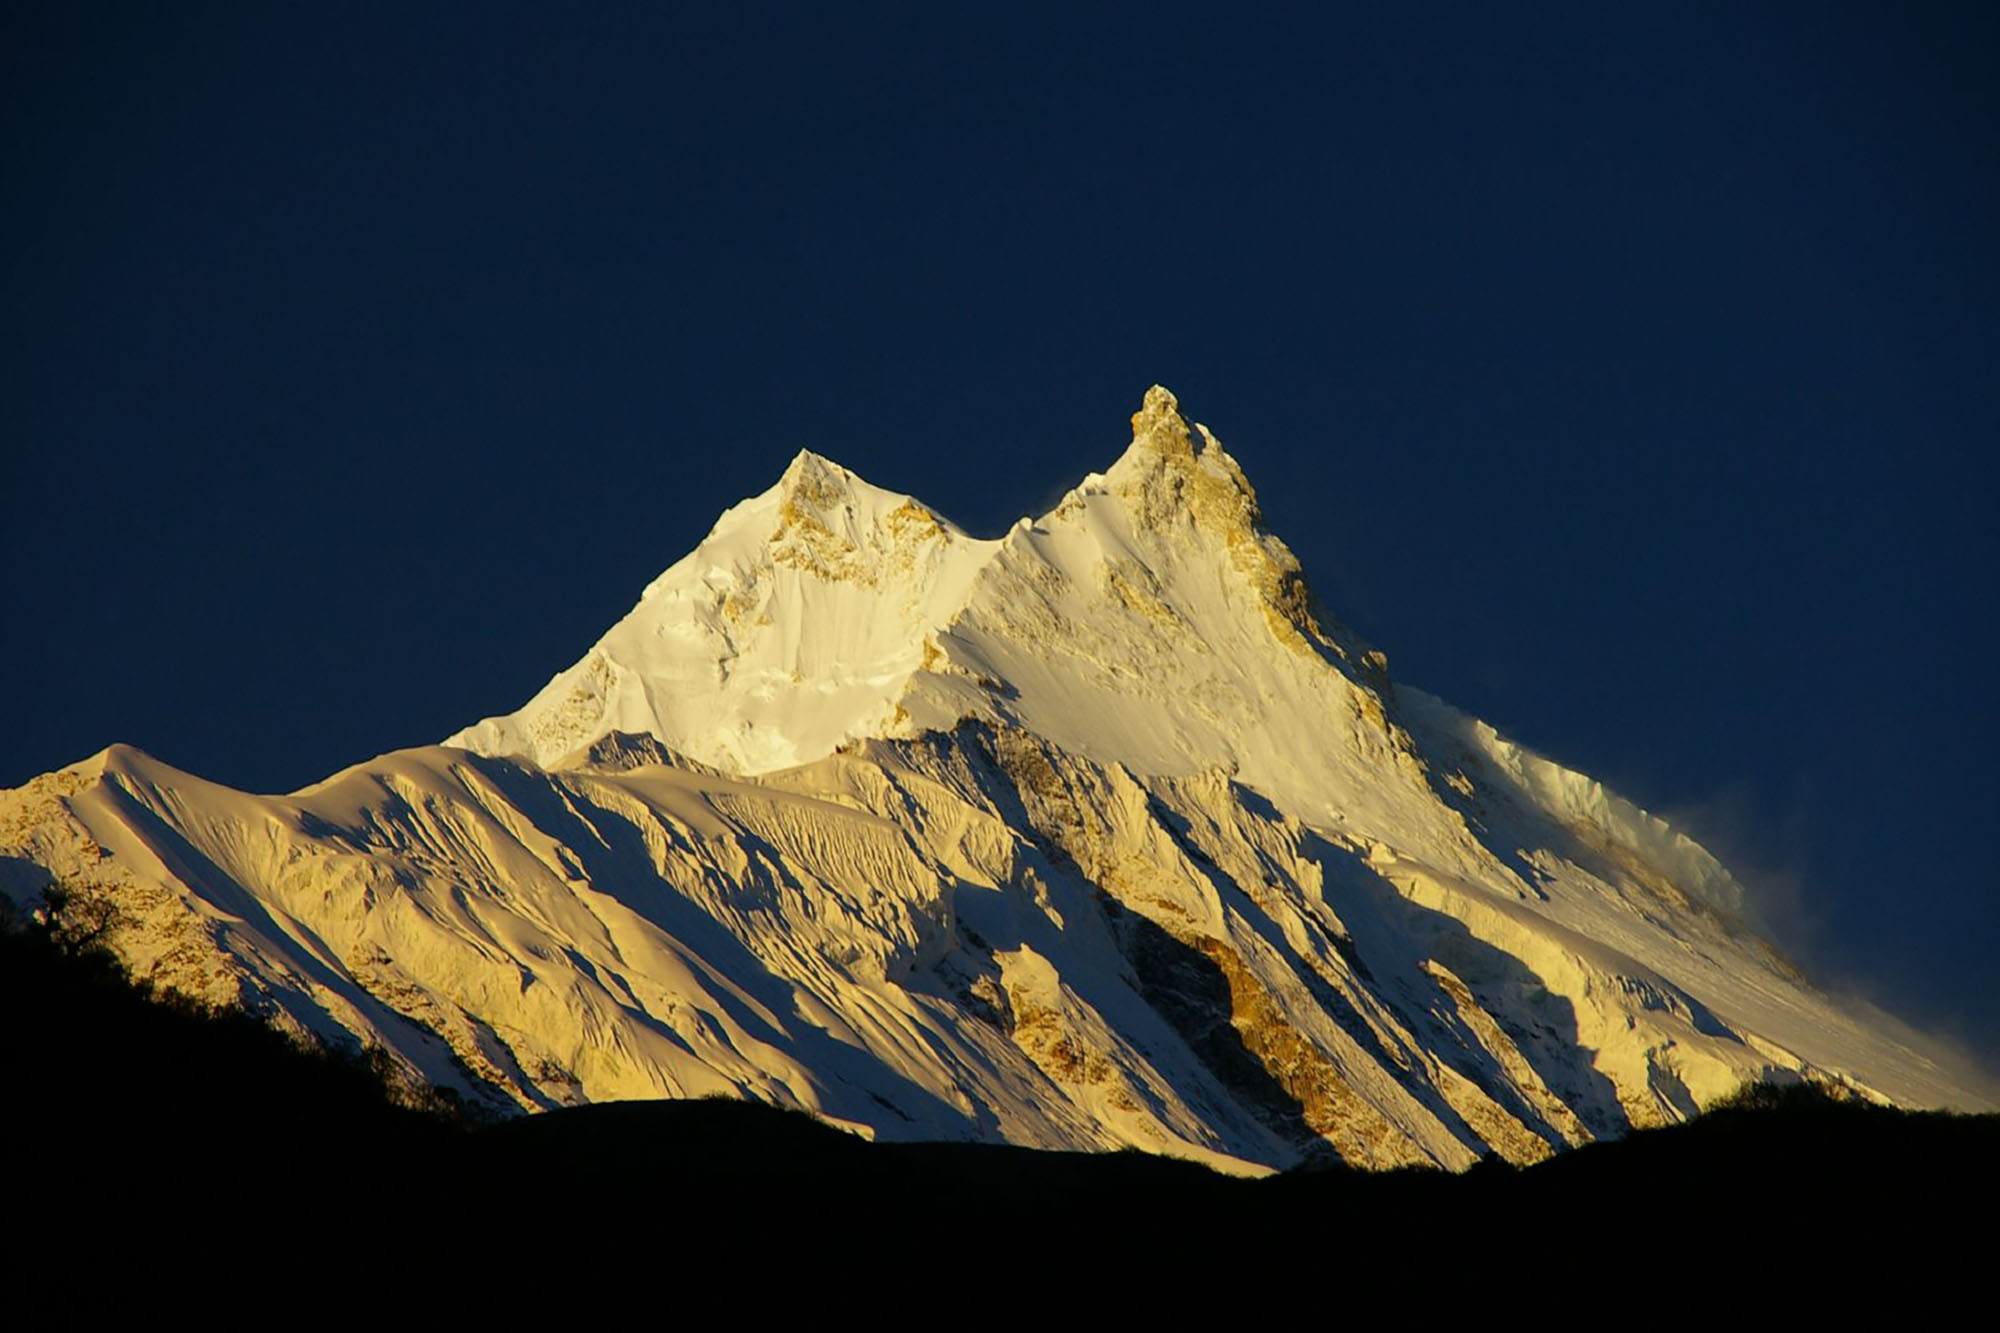 Manaslu Expedition (8163m)